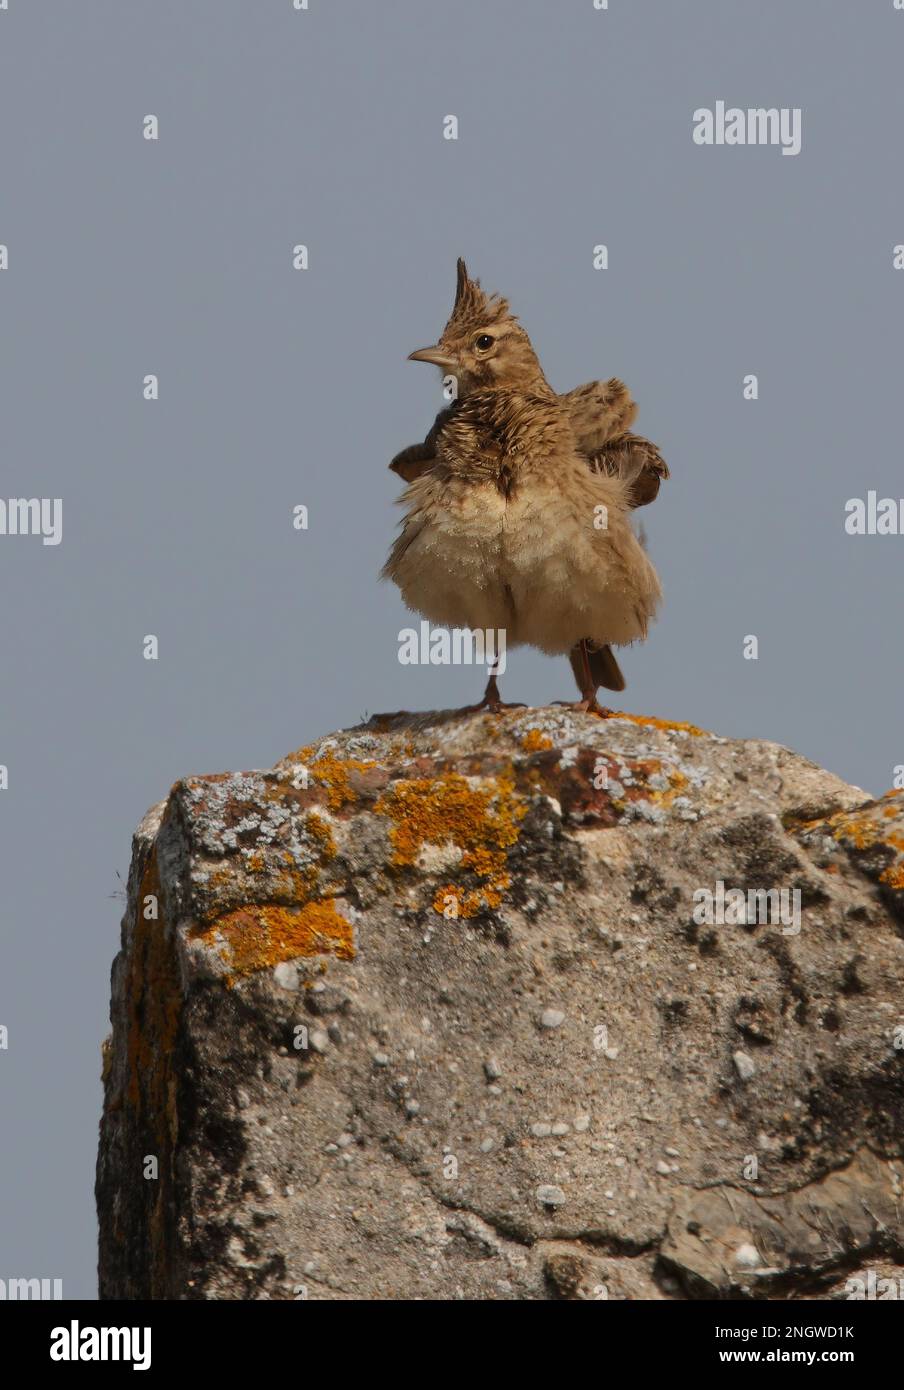 Lark à crête (Galerida cristata pallida) adulte perché sur une roche couverte de lichen, secouant les plumes de Ria Formosa NP, Algarve, Portugal A Banque D'Images